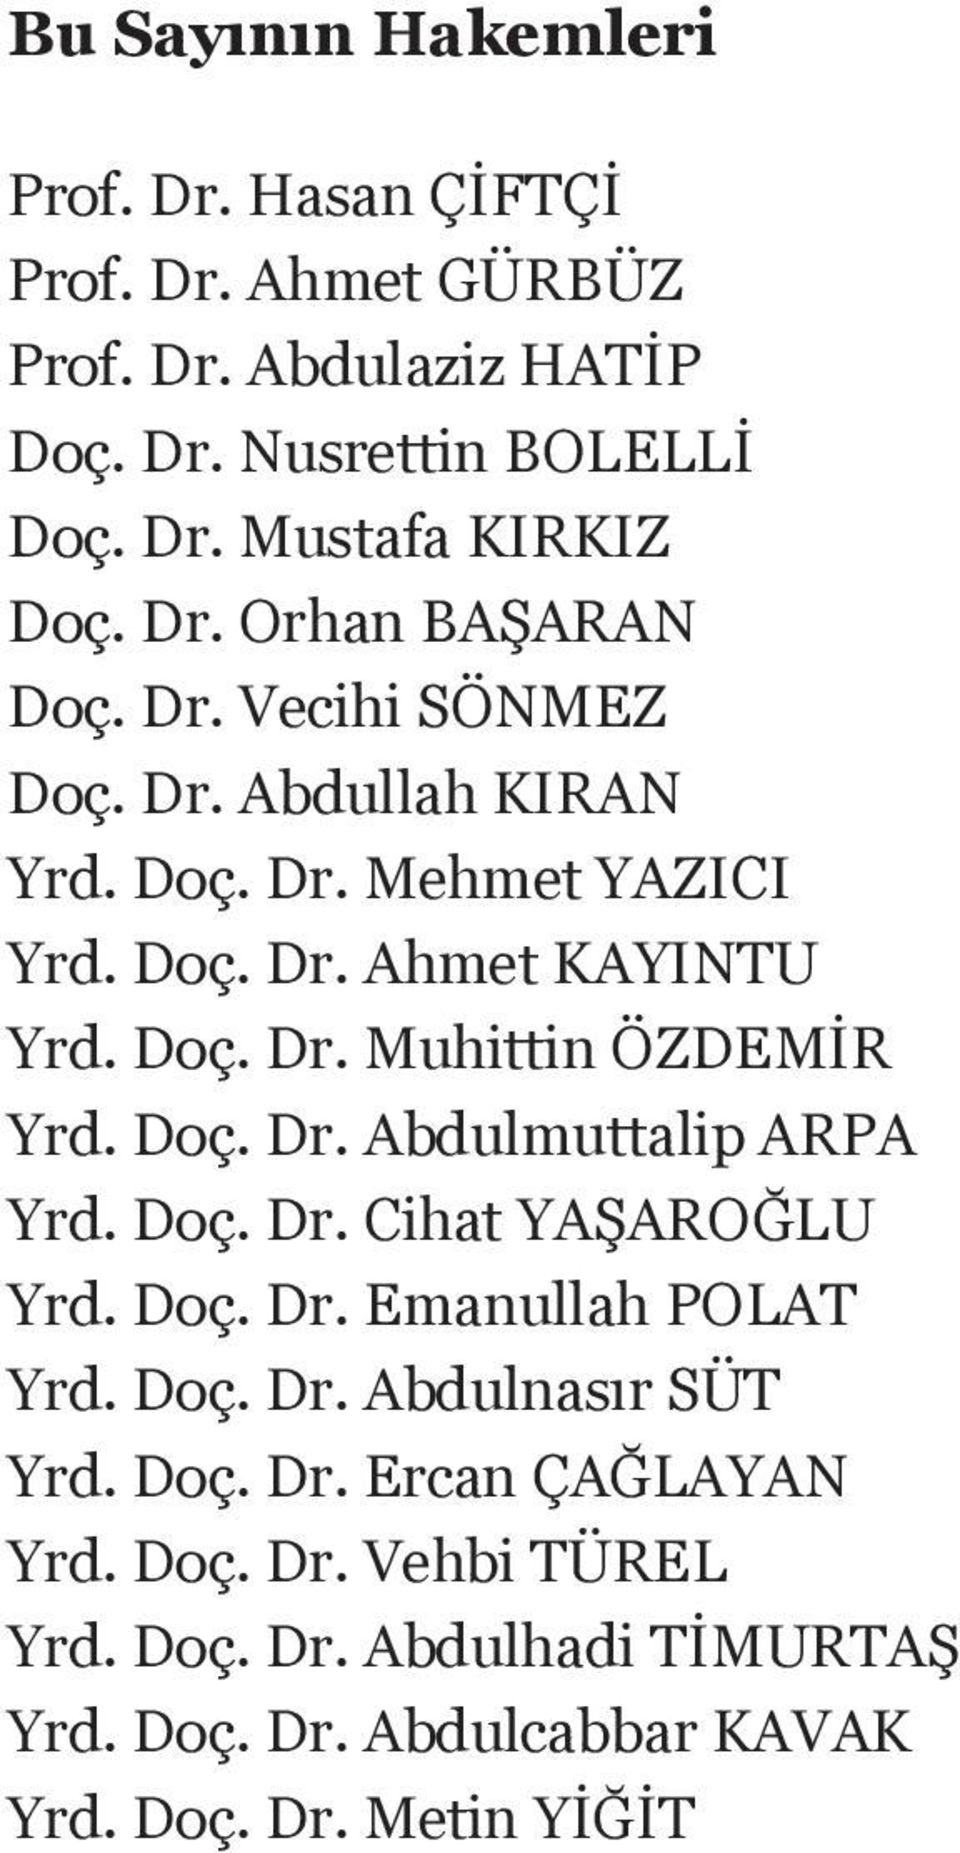 Doç. Dr. Abdulmuttalip ARPA Yrd. Doç. Dr. Cihat YAŞAROĞLU Yrd. Doç. Dr. Emanullah POLAT Yrd. Doç. Dr. Abdulnasır SÜT Yrd. Doç. Dr. Ercan ÇAĞLAYAN Yrd.